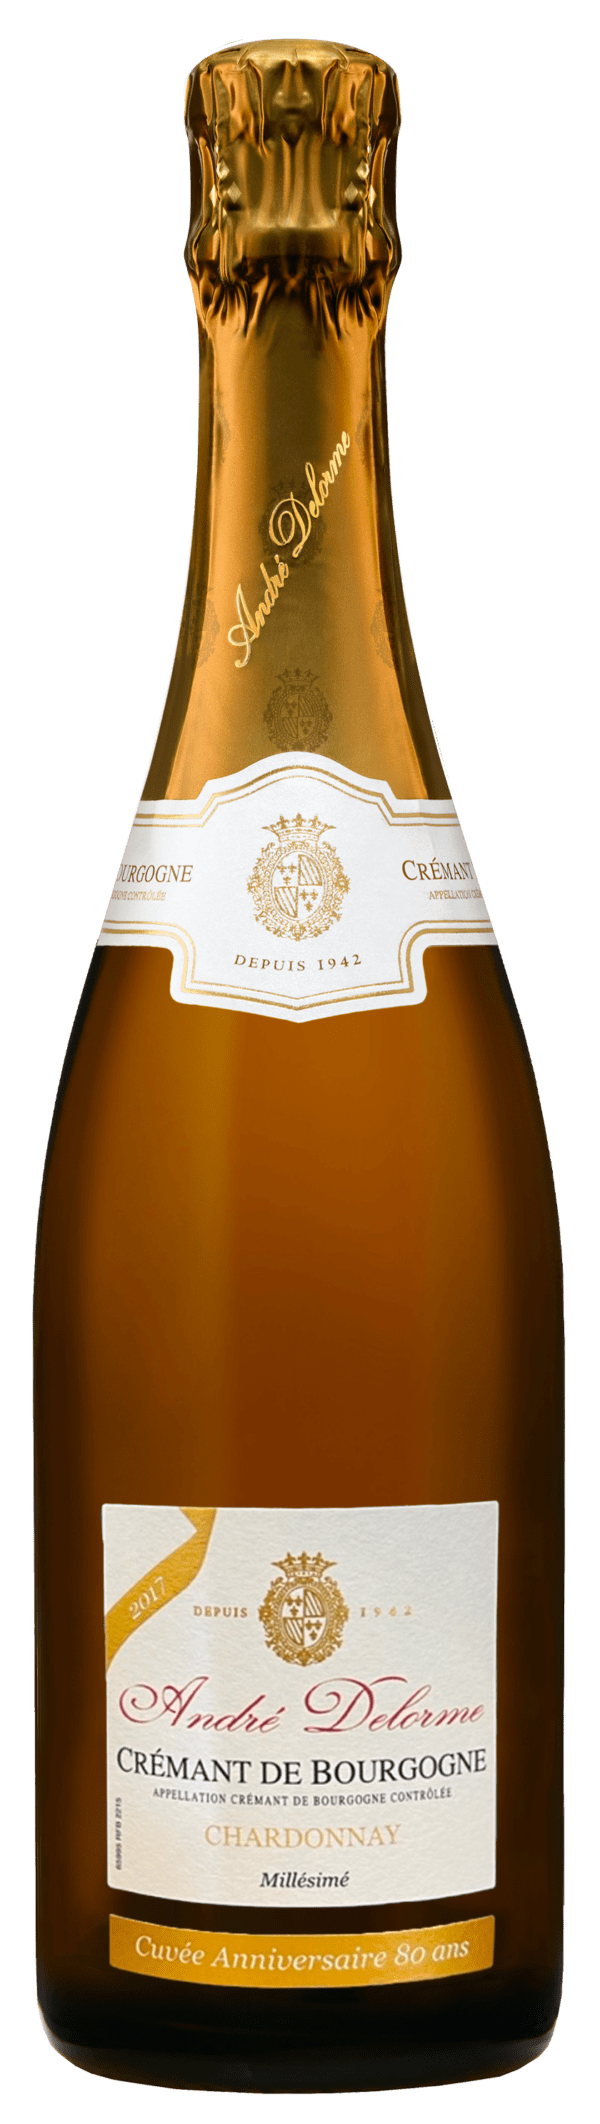 Crémant de Bourgogne André Delorme Blanc des Blancs Brut 100% Chardonnay 2017 - Cuvée Anniversaire 80 Ans - Edition Limité - Vin de Bourgogne